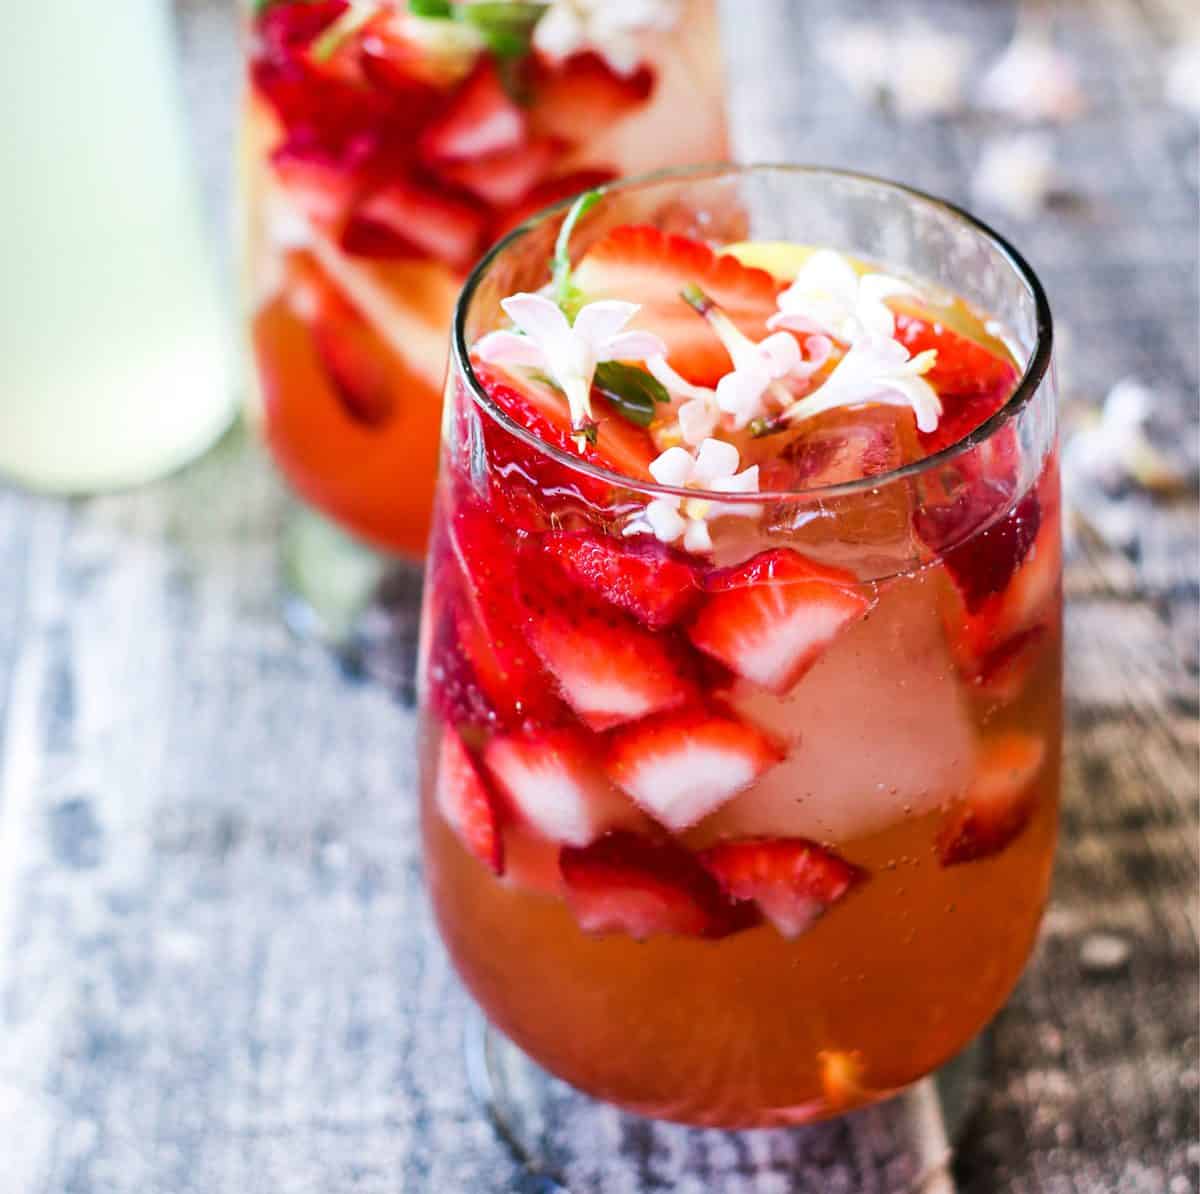 Strawberry Lemon Smash Wine based cocktail recipe